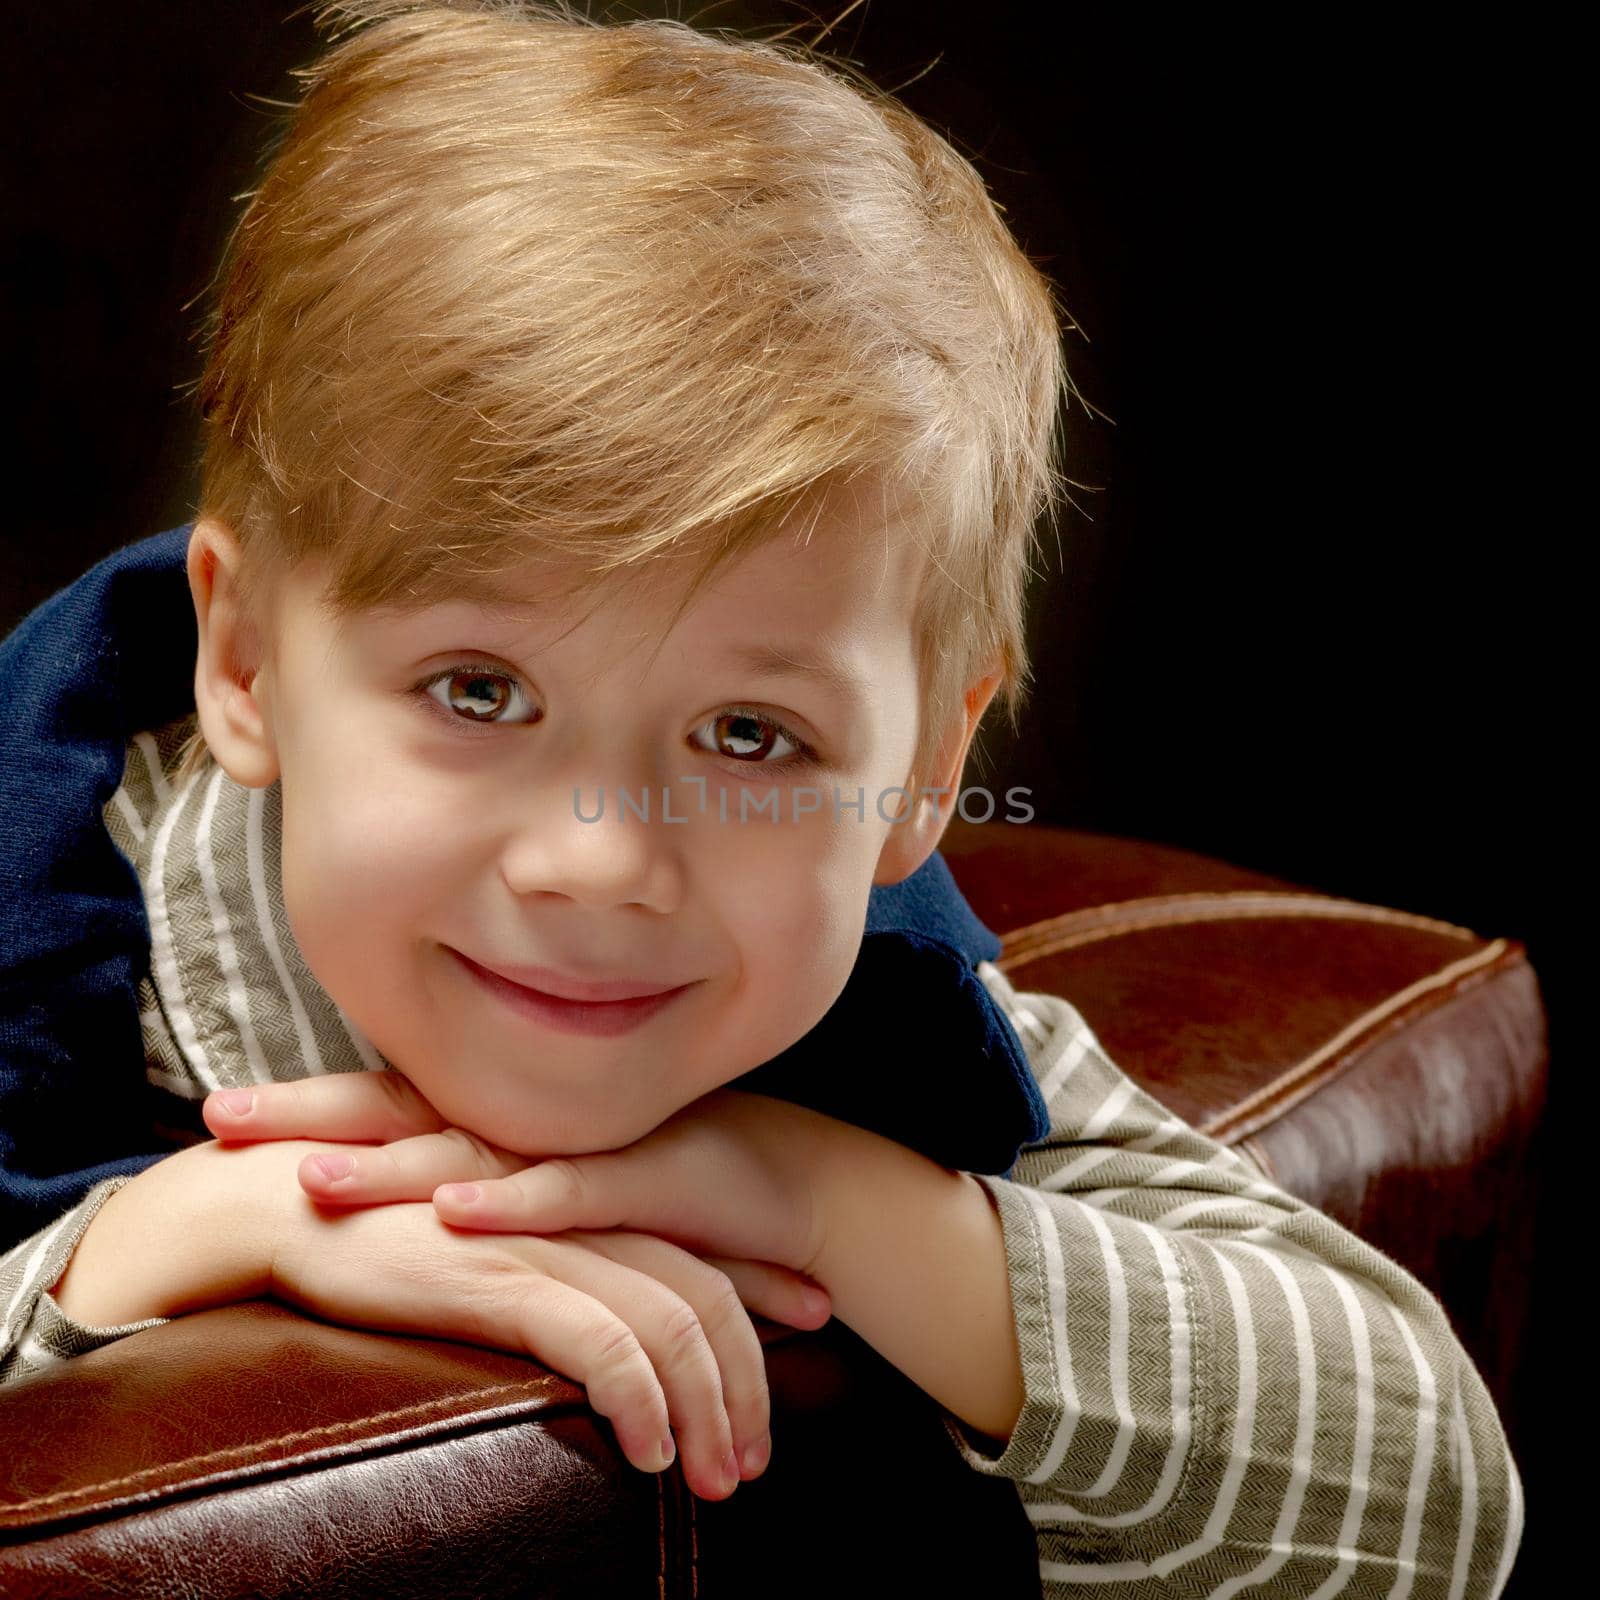 Beautiful little boy on a black background, close-up. by kolesnikov_studio